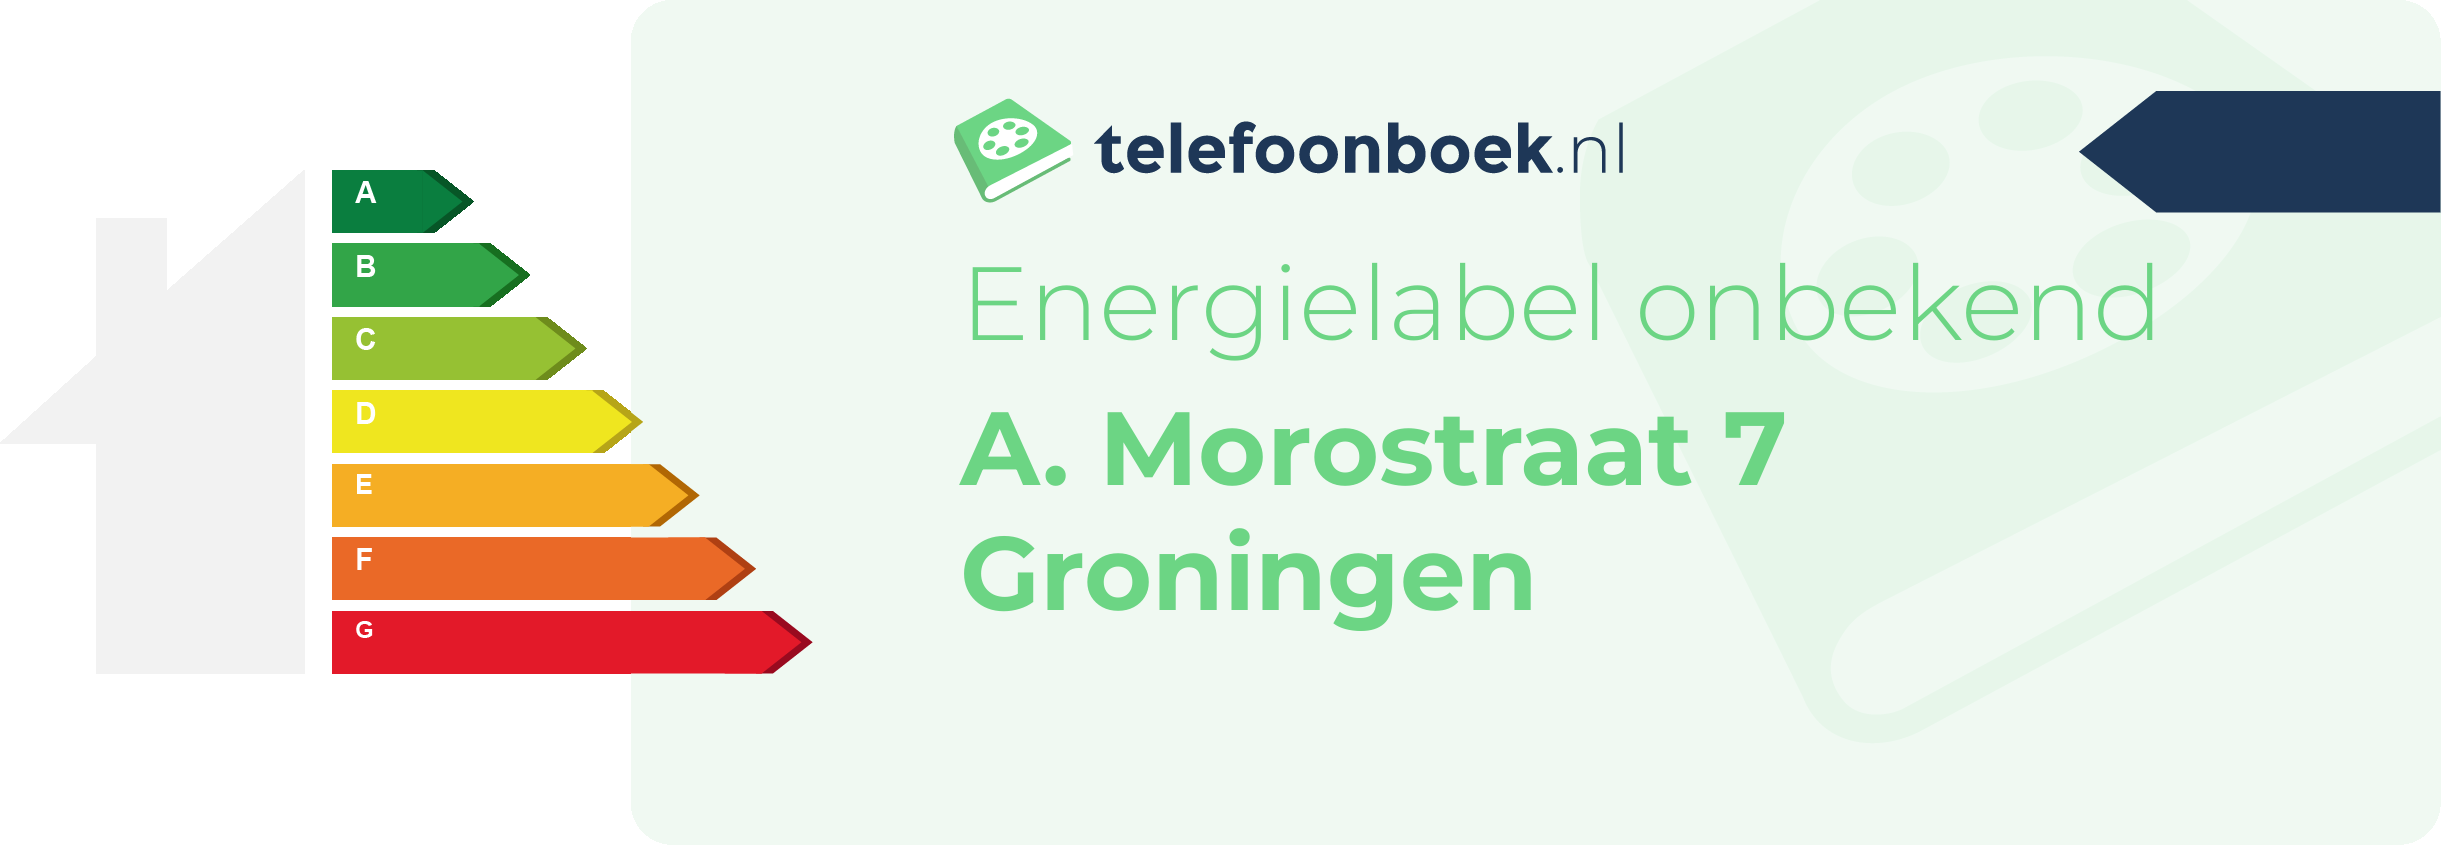 Energielabel A. Morostraat 7 Groningen